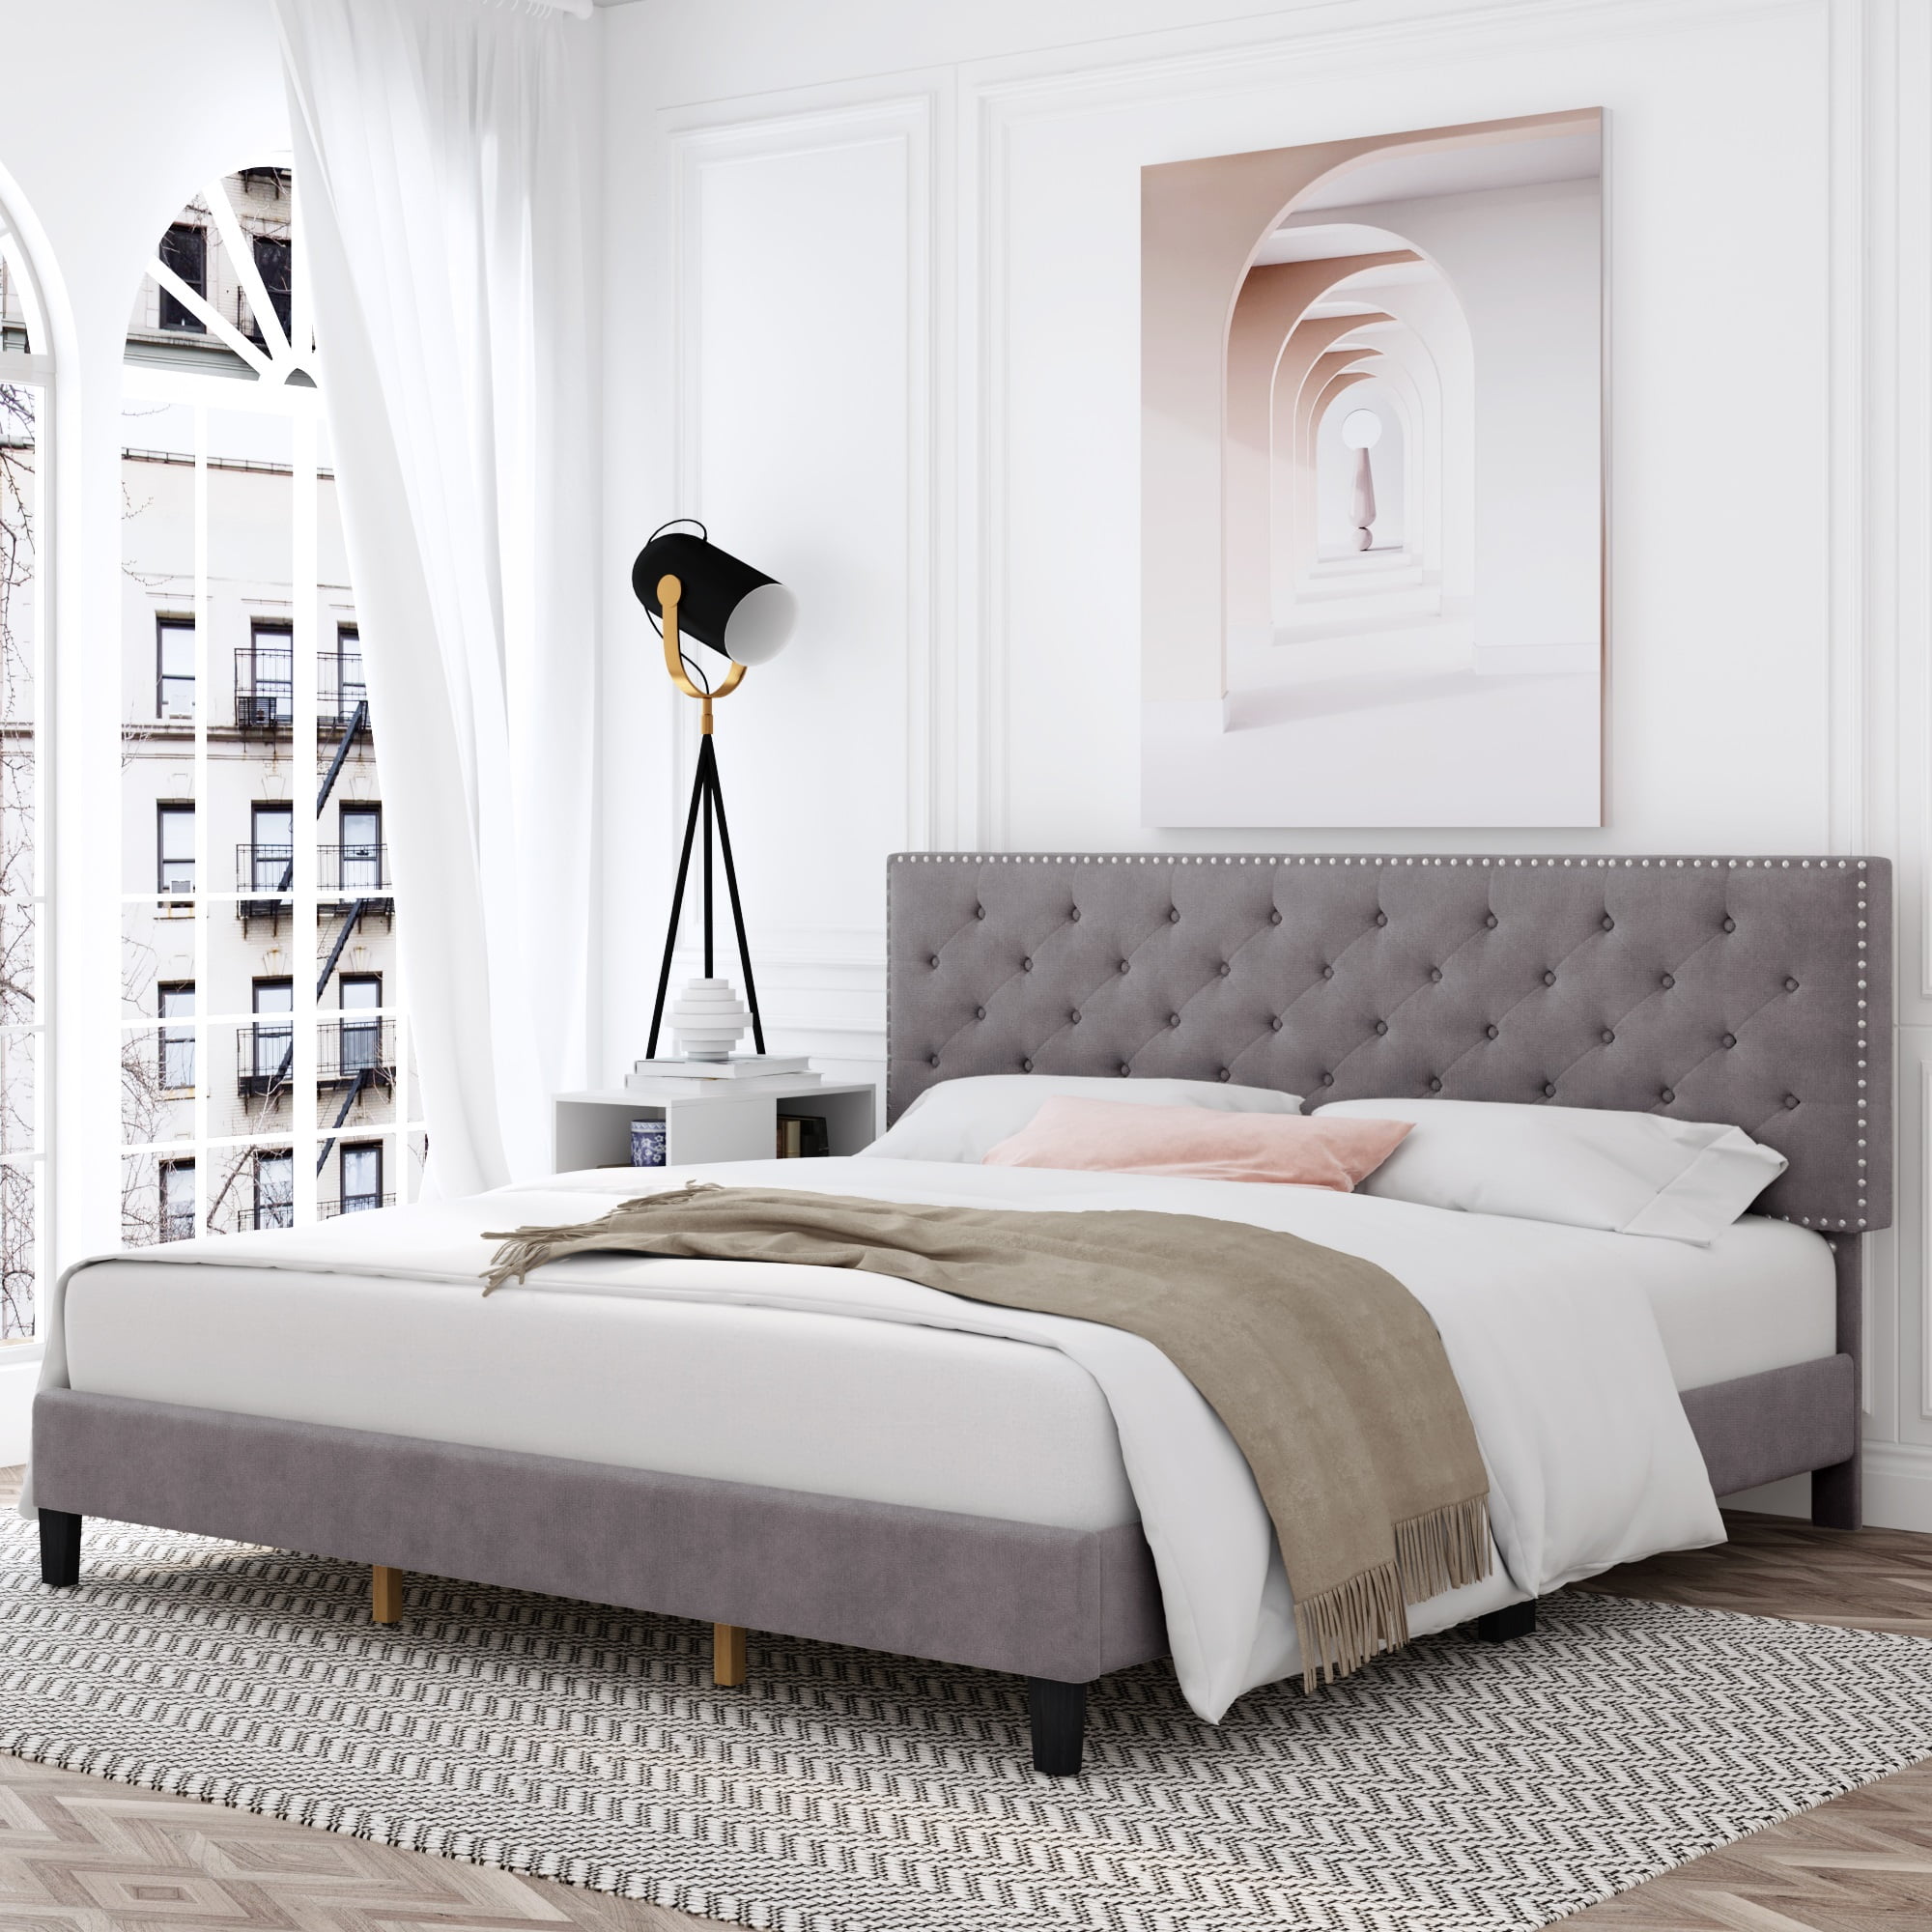 Homfa King Size Bed, Modern Upholstered Platform Bed Frame with Adjustable  Headboard for Bedroom, Grey